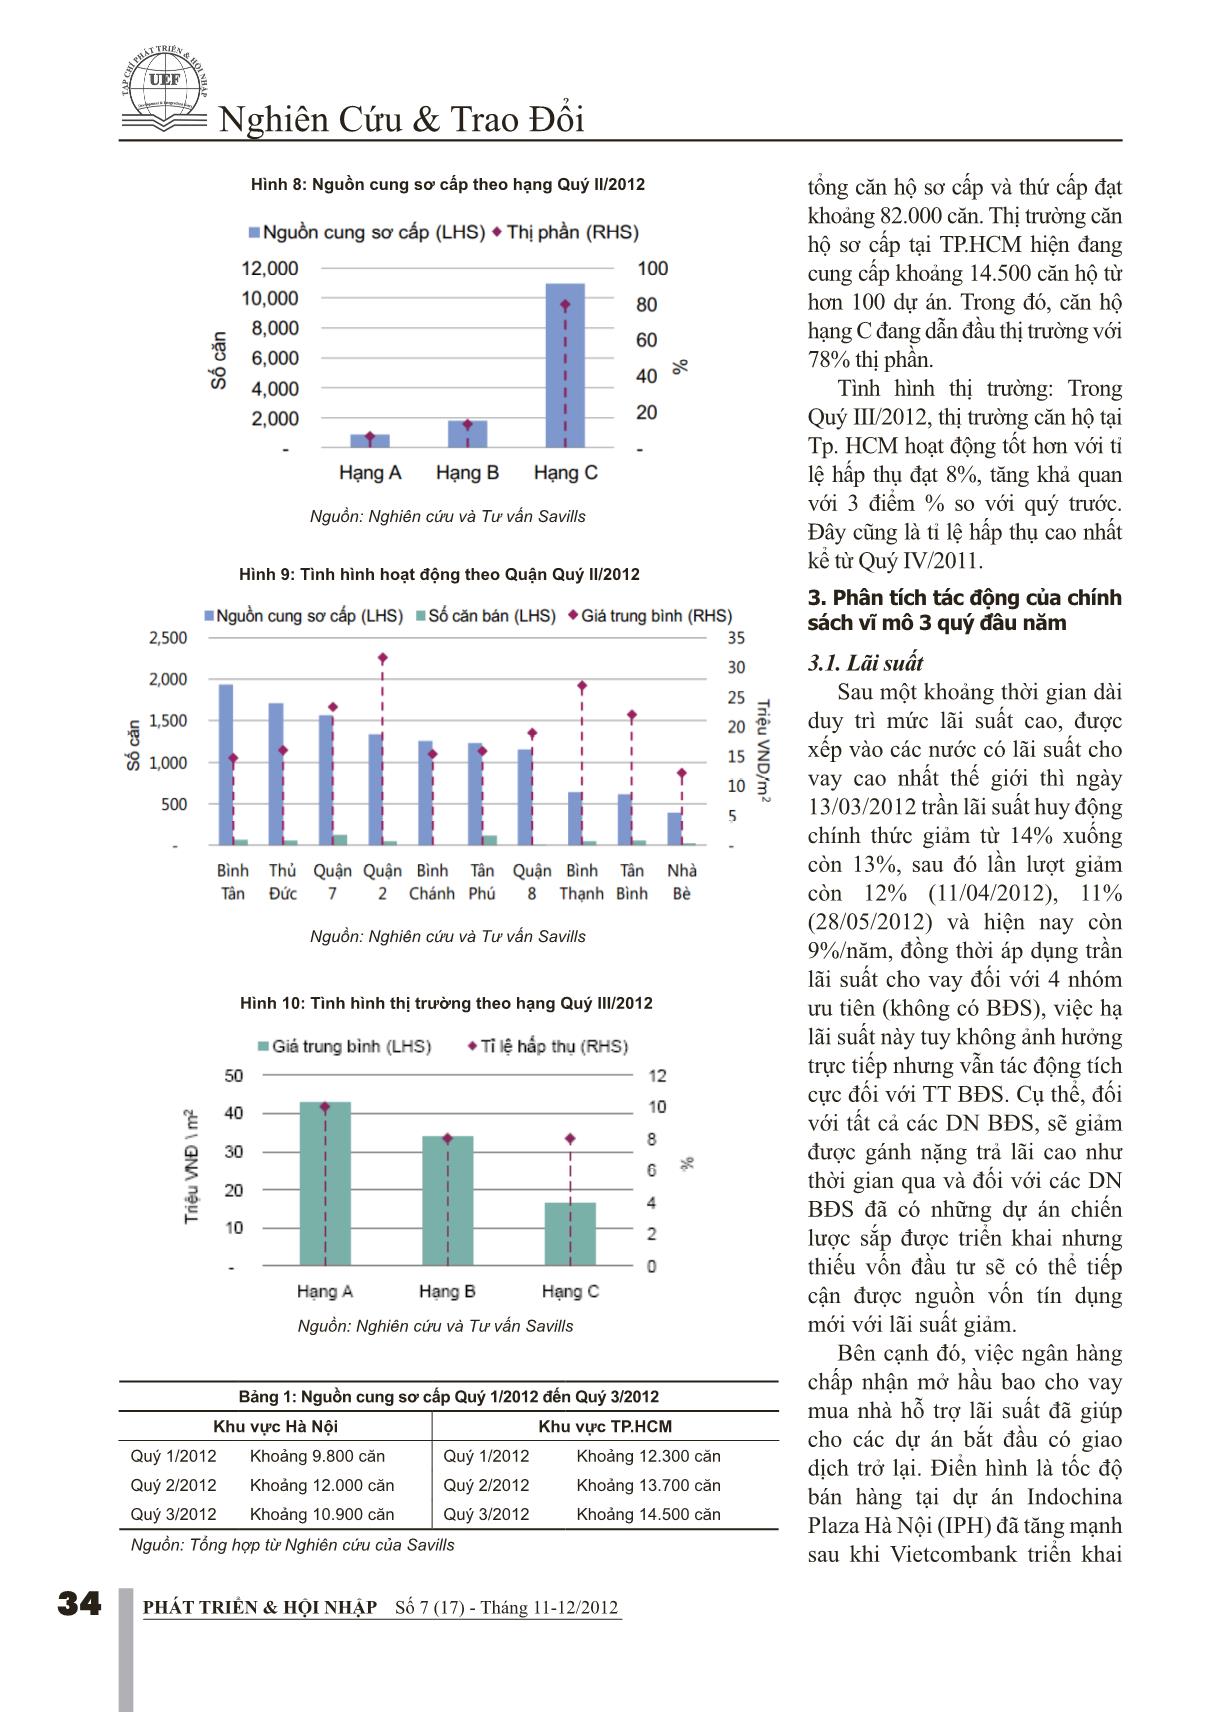 Tác động của chính sách vĩ mô 9 tháng đầu năm lên giá căn hộ Quý IV/2012 trang 4